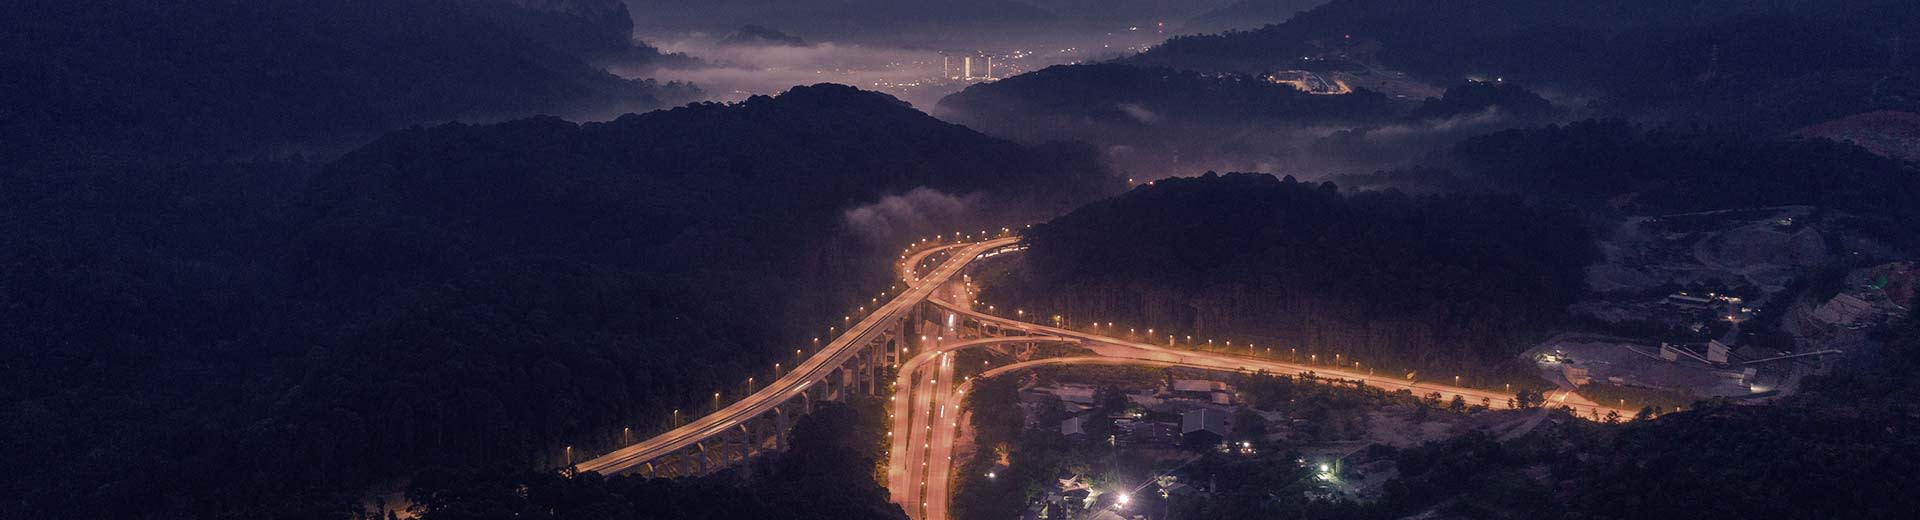 Dark Hills encierran una carretera brillantemente iluminada, con las luces de Rawang en la distancia.